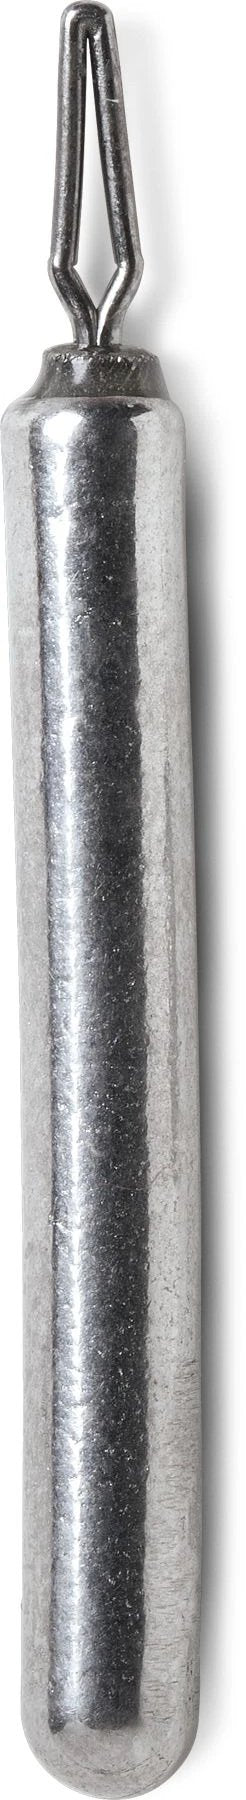 VMC Tungsten Cylinder Drop Shot Weight